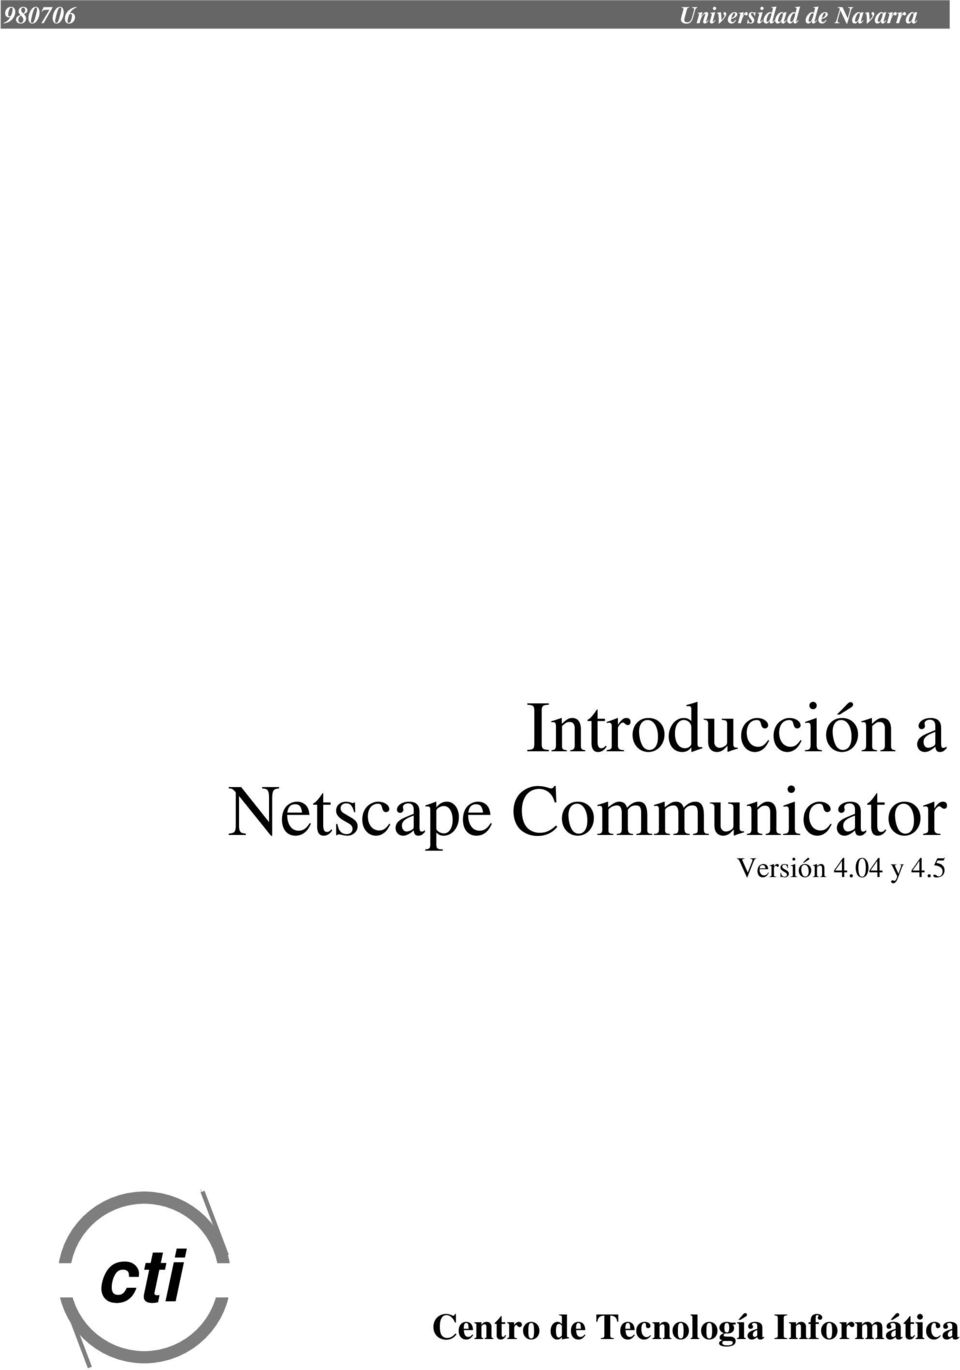 Communicator Versión 4.04 y 4.